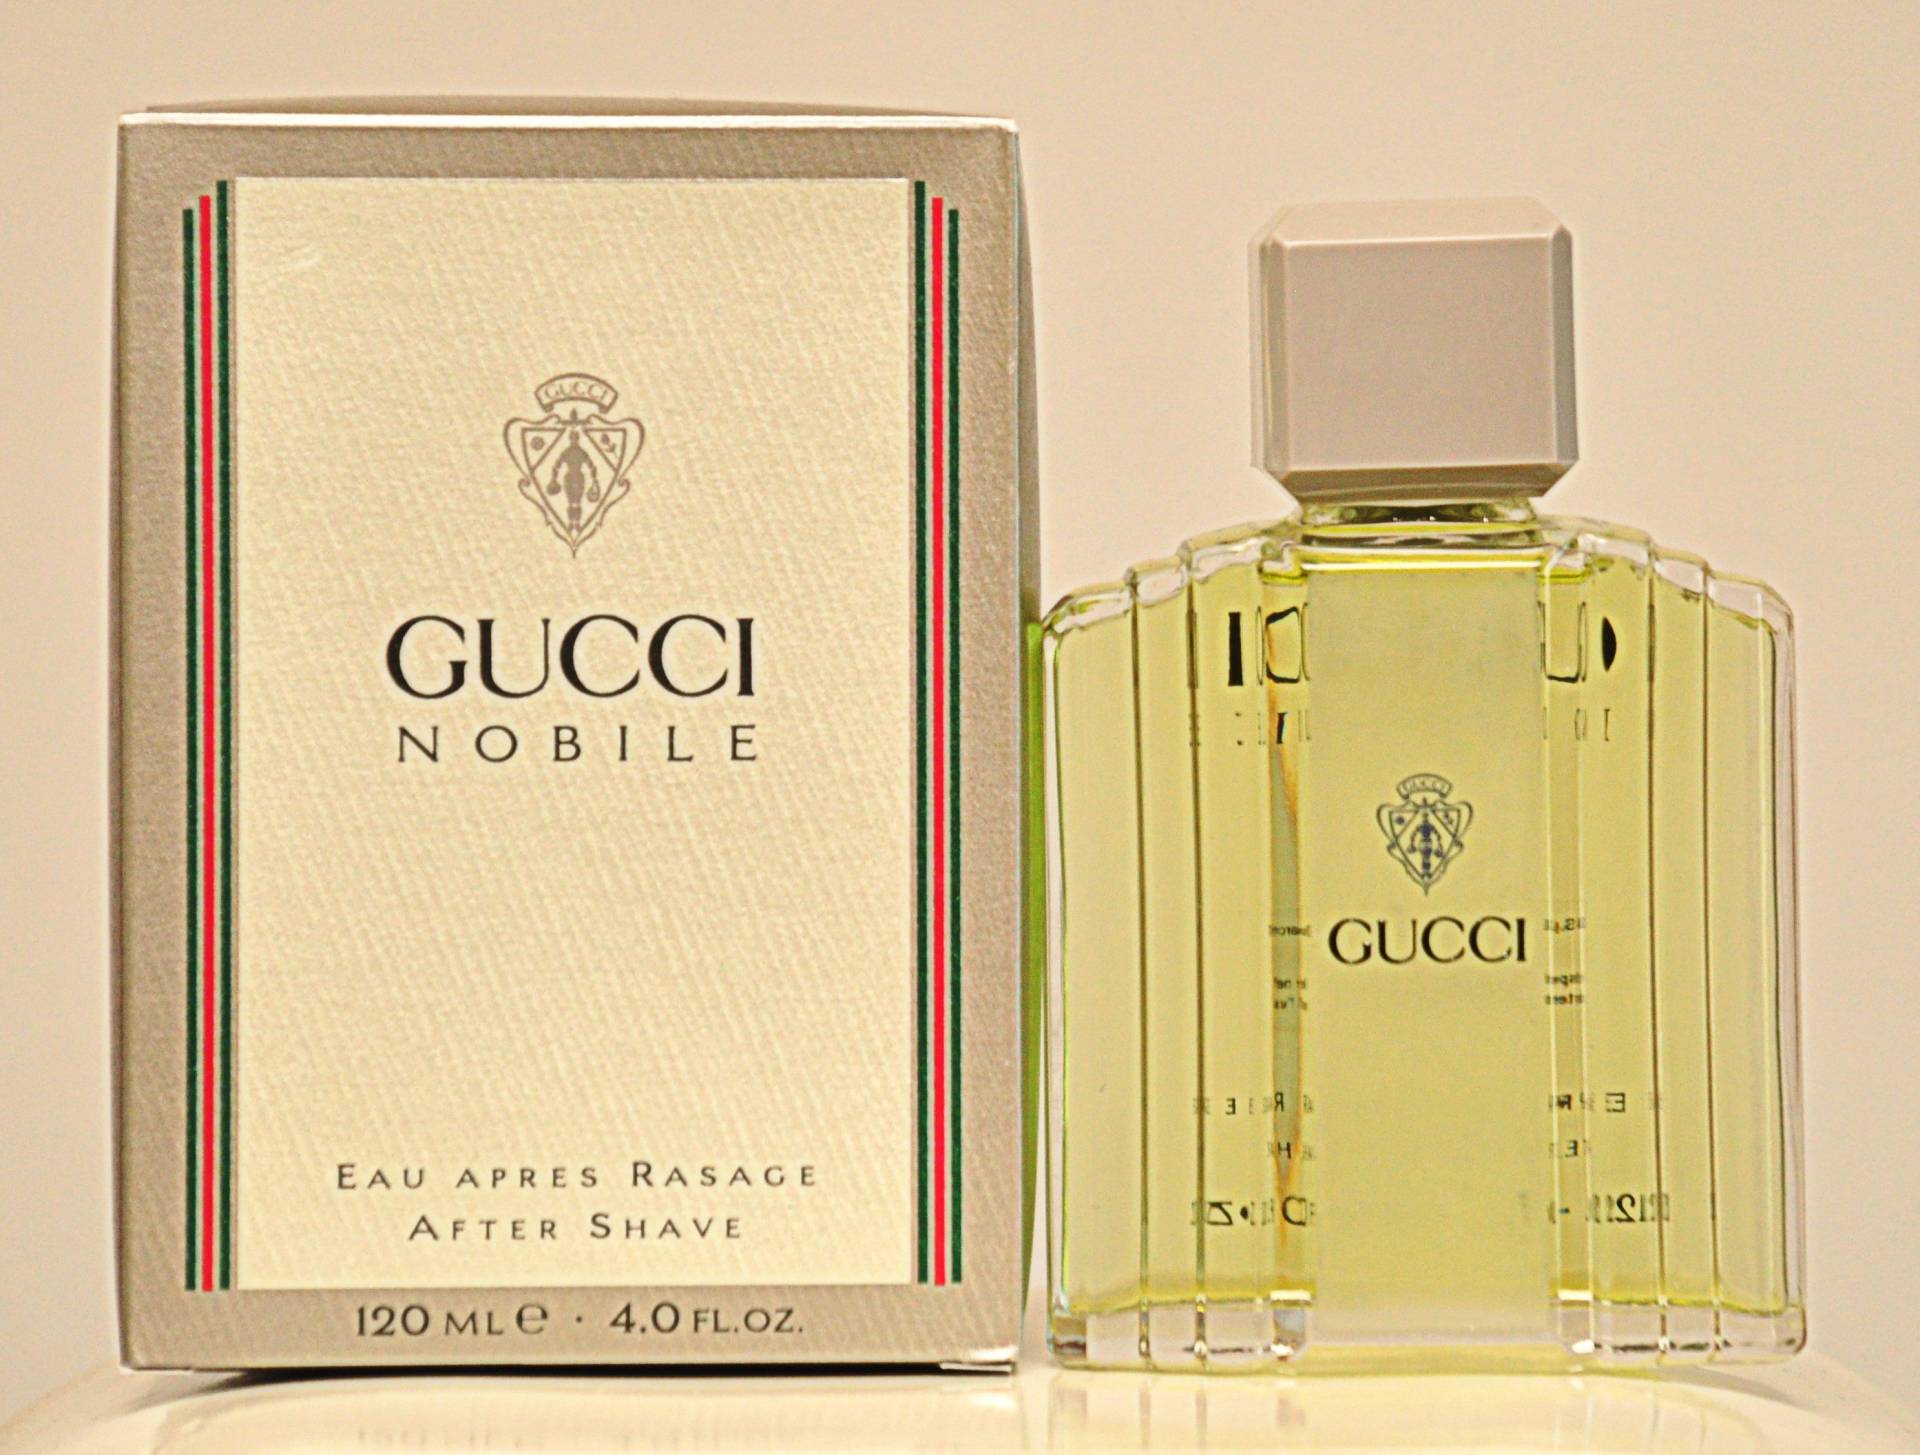 Gucci Nobile Eau Apres Rasage 120Ml Splash Non Spray Parfüm Mann Sehr Selten Jahrgang 1988 Neu Versiegelt von Etsy - YourVintagePerfume